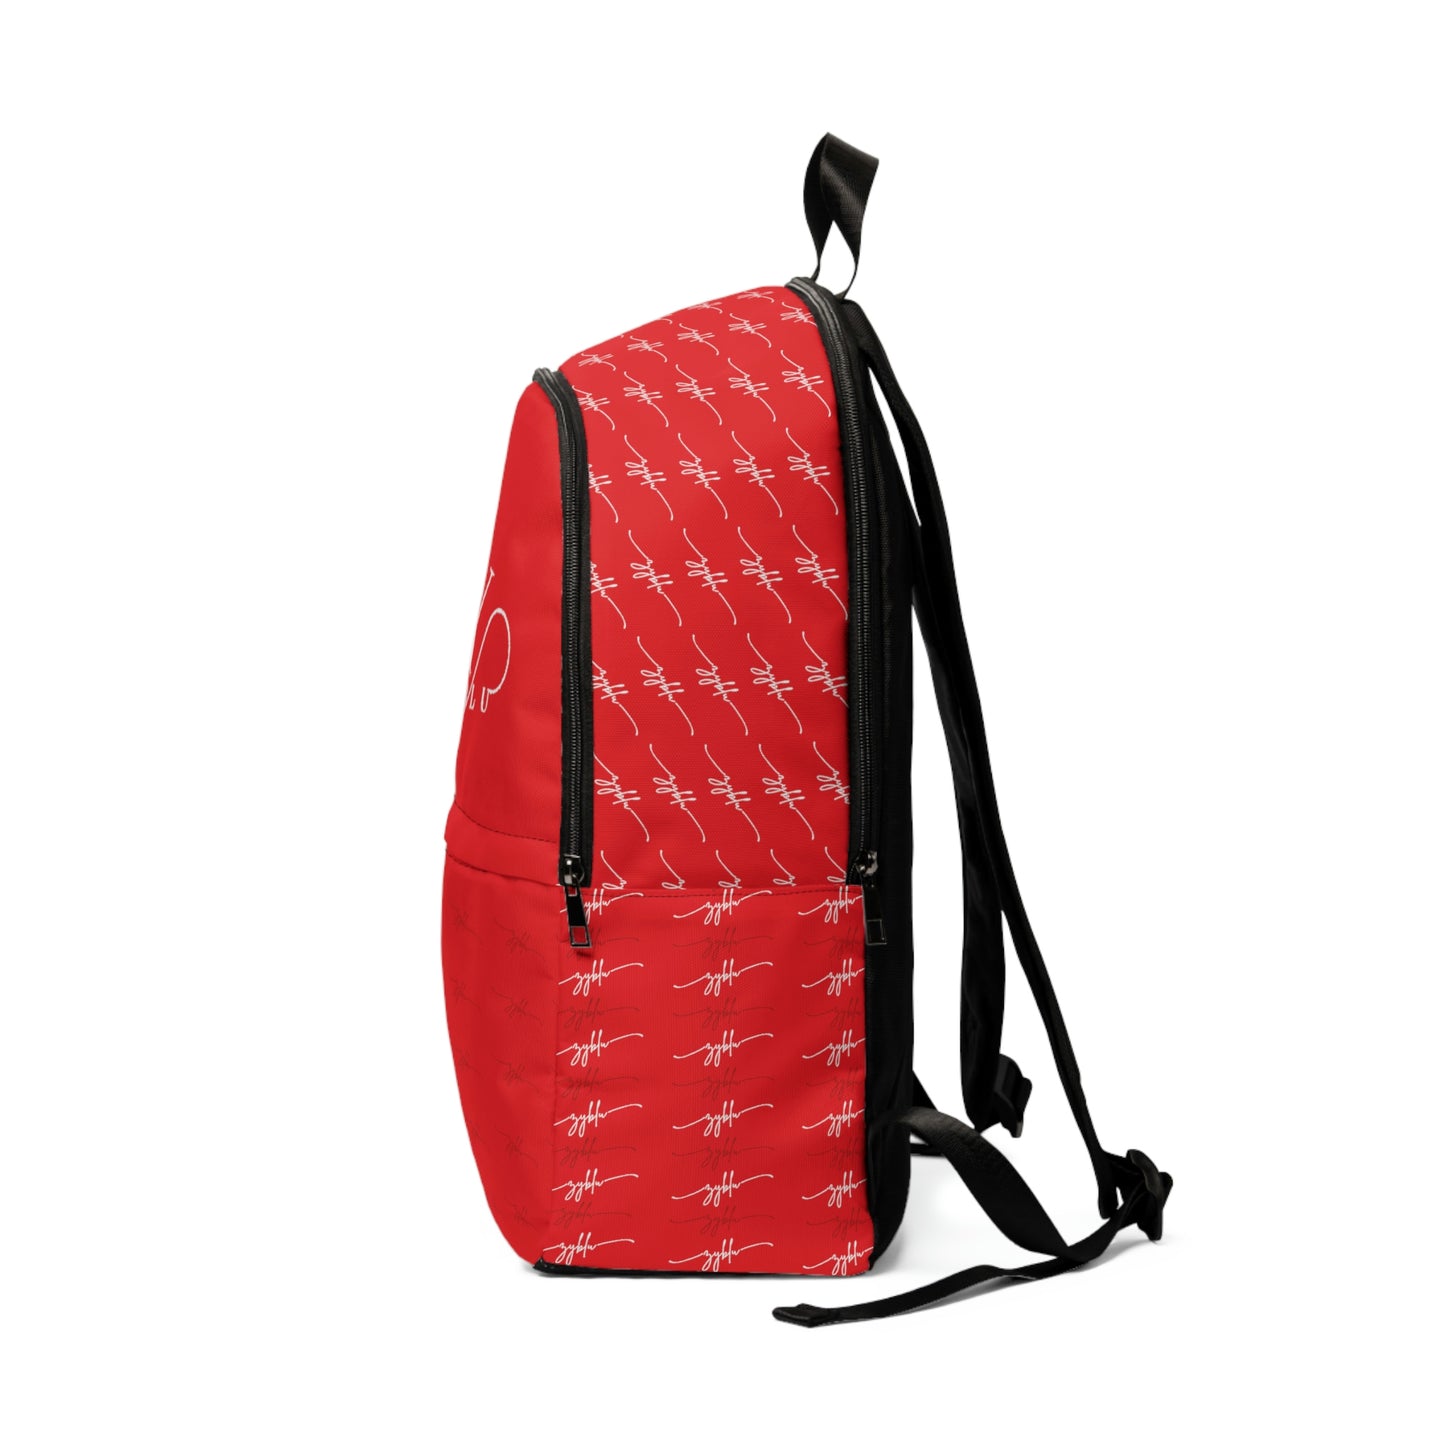 zyblu red logo Backpack